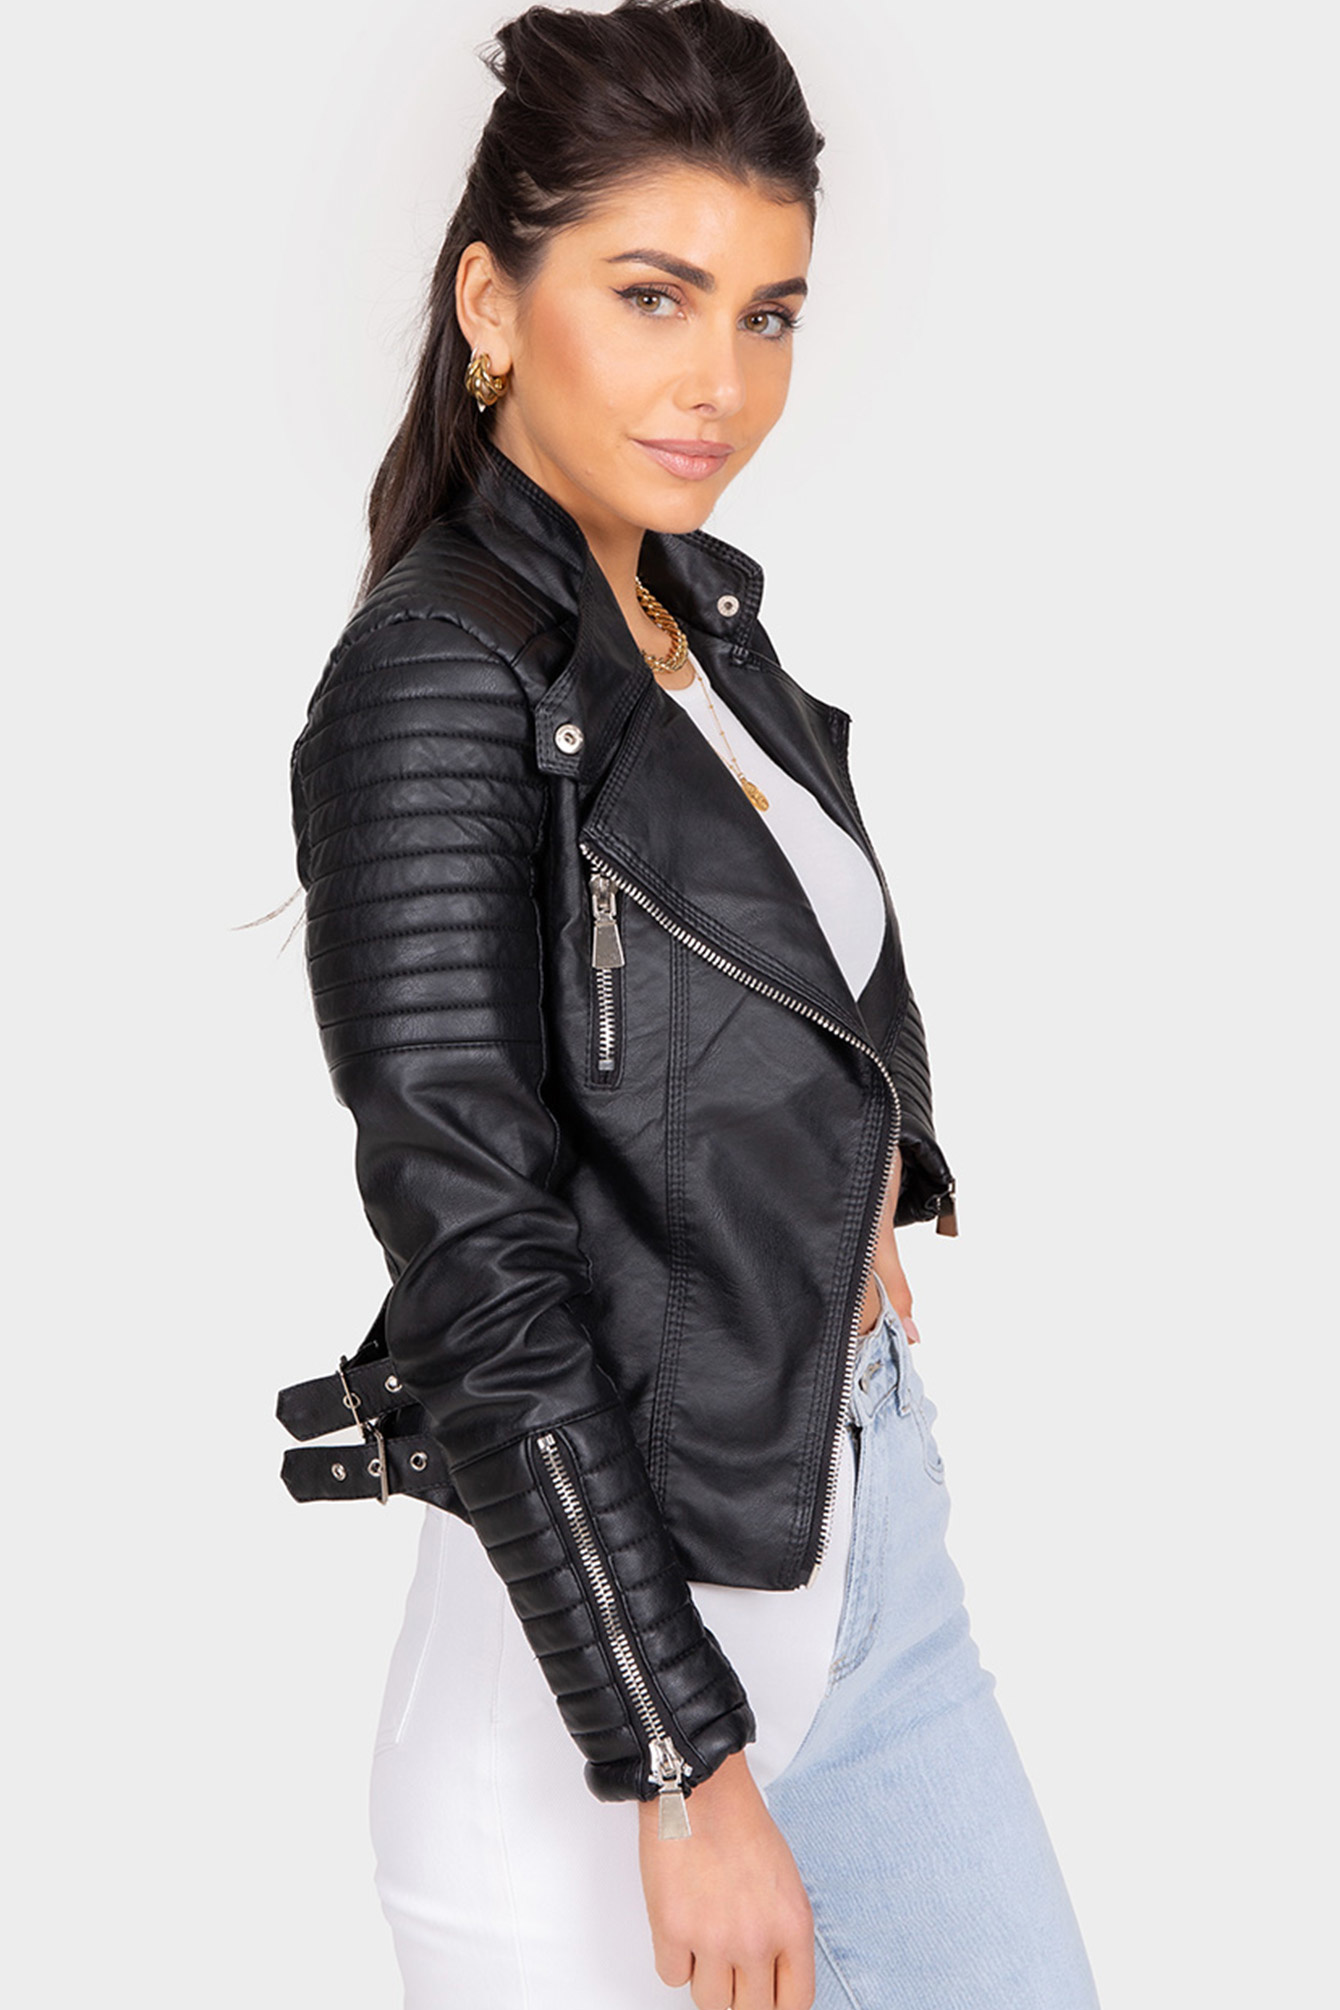 Cusco heerlijkheid zakdoek Shop dames biker jacket zwart | - Elise Store